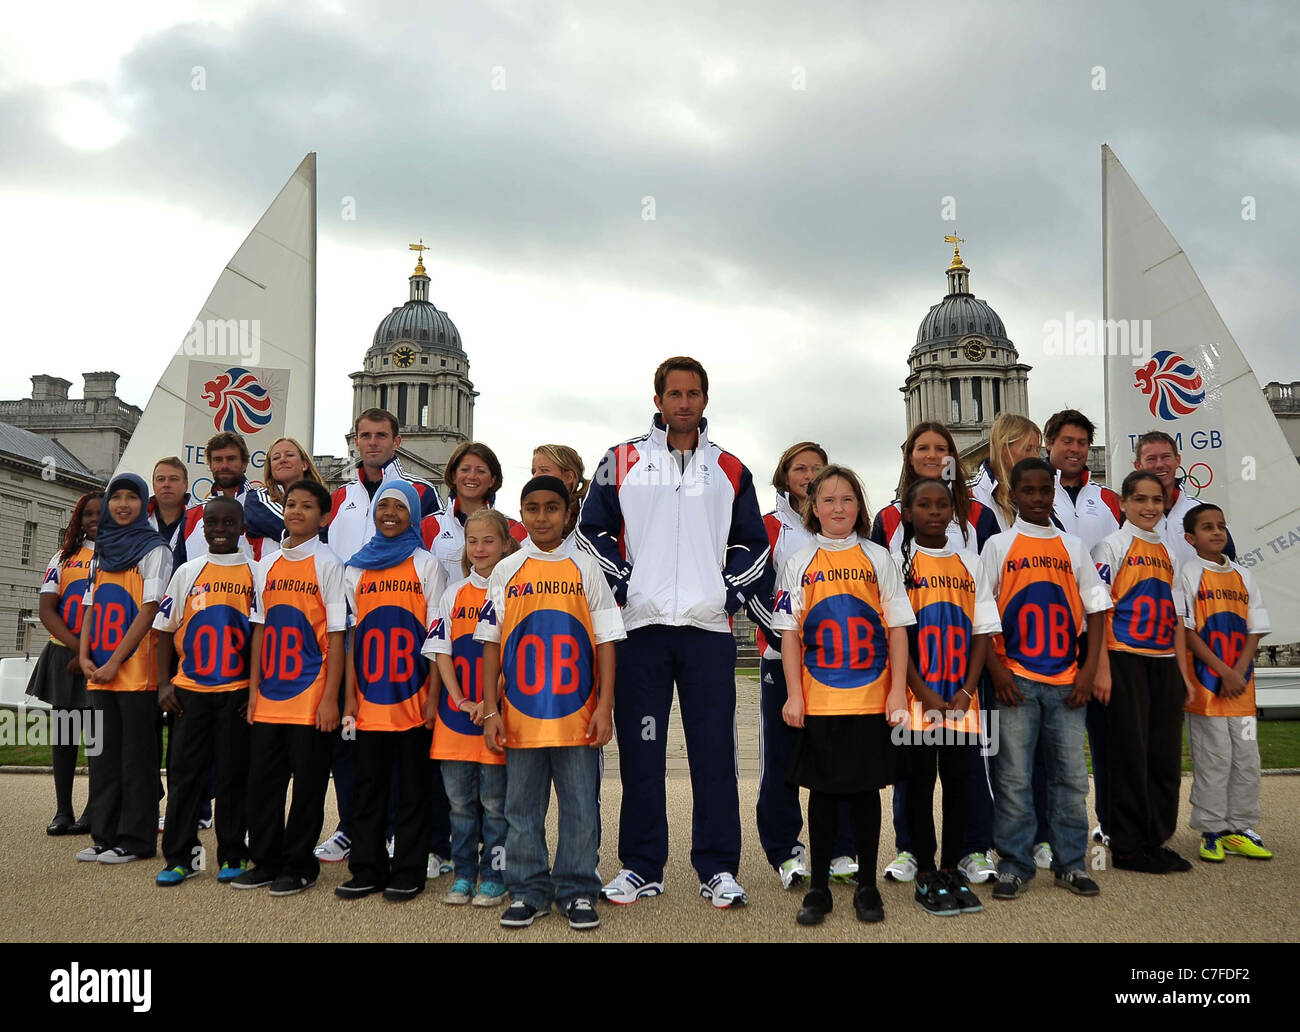 TeamGB kündigt die ersten Athleten für die Olympischen Spiele in London 2012 ausgewählt werden. Alten Naval College. Greenwich. London Stockfoto